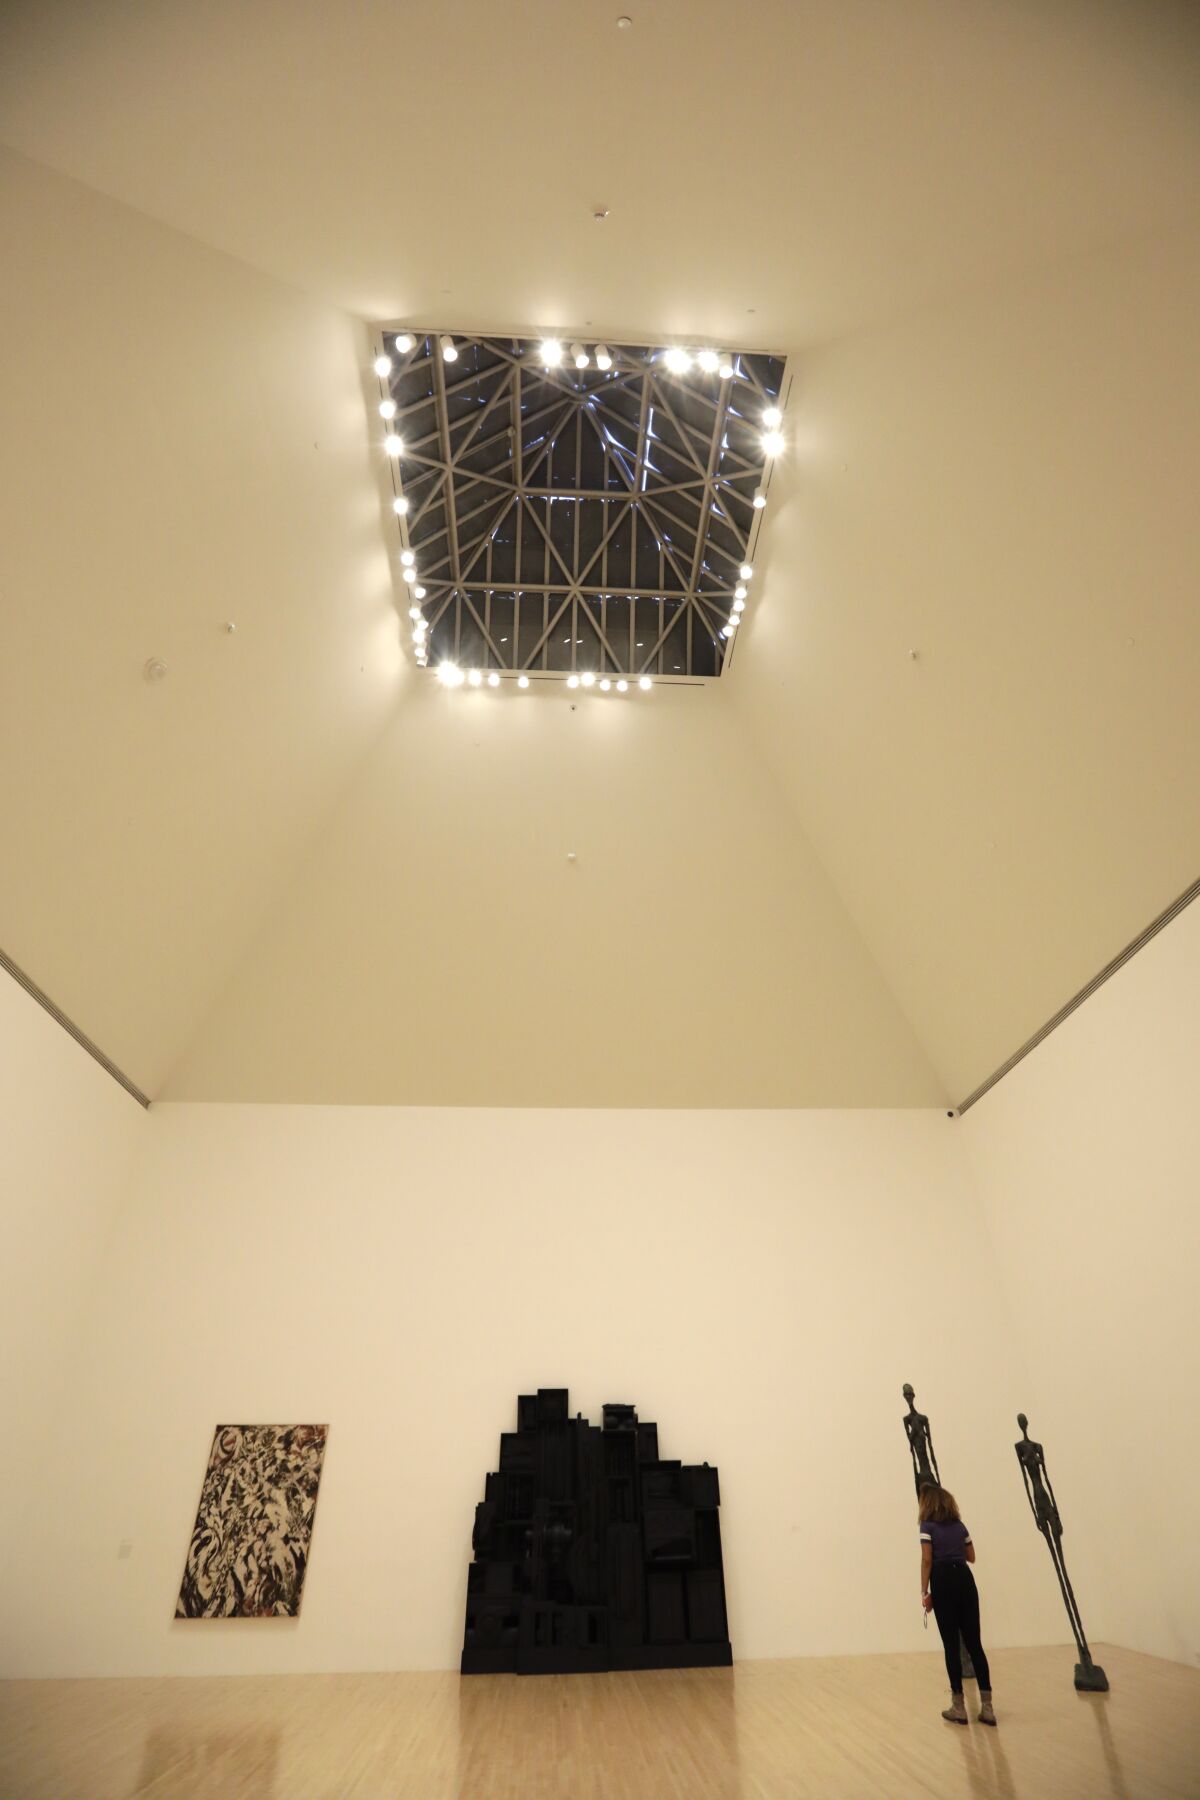 La galería de techos muy altos tiene una claraboya, que ha sido tapiada y sustituida por iluminación artificial.